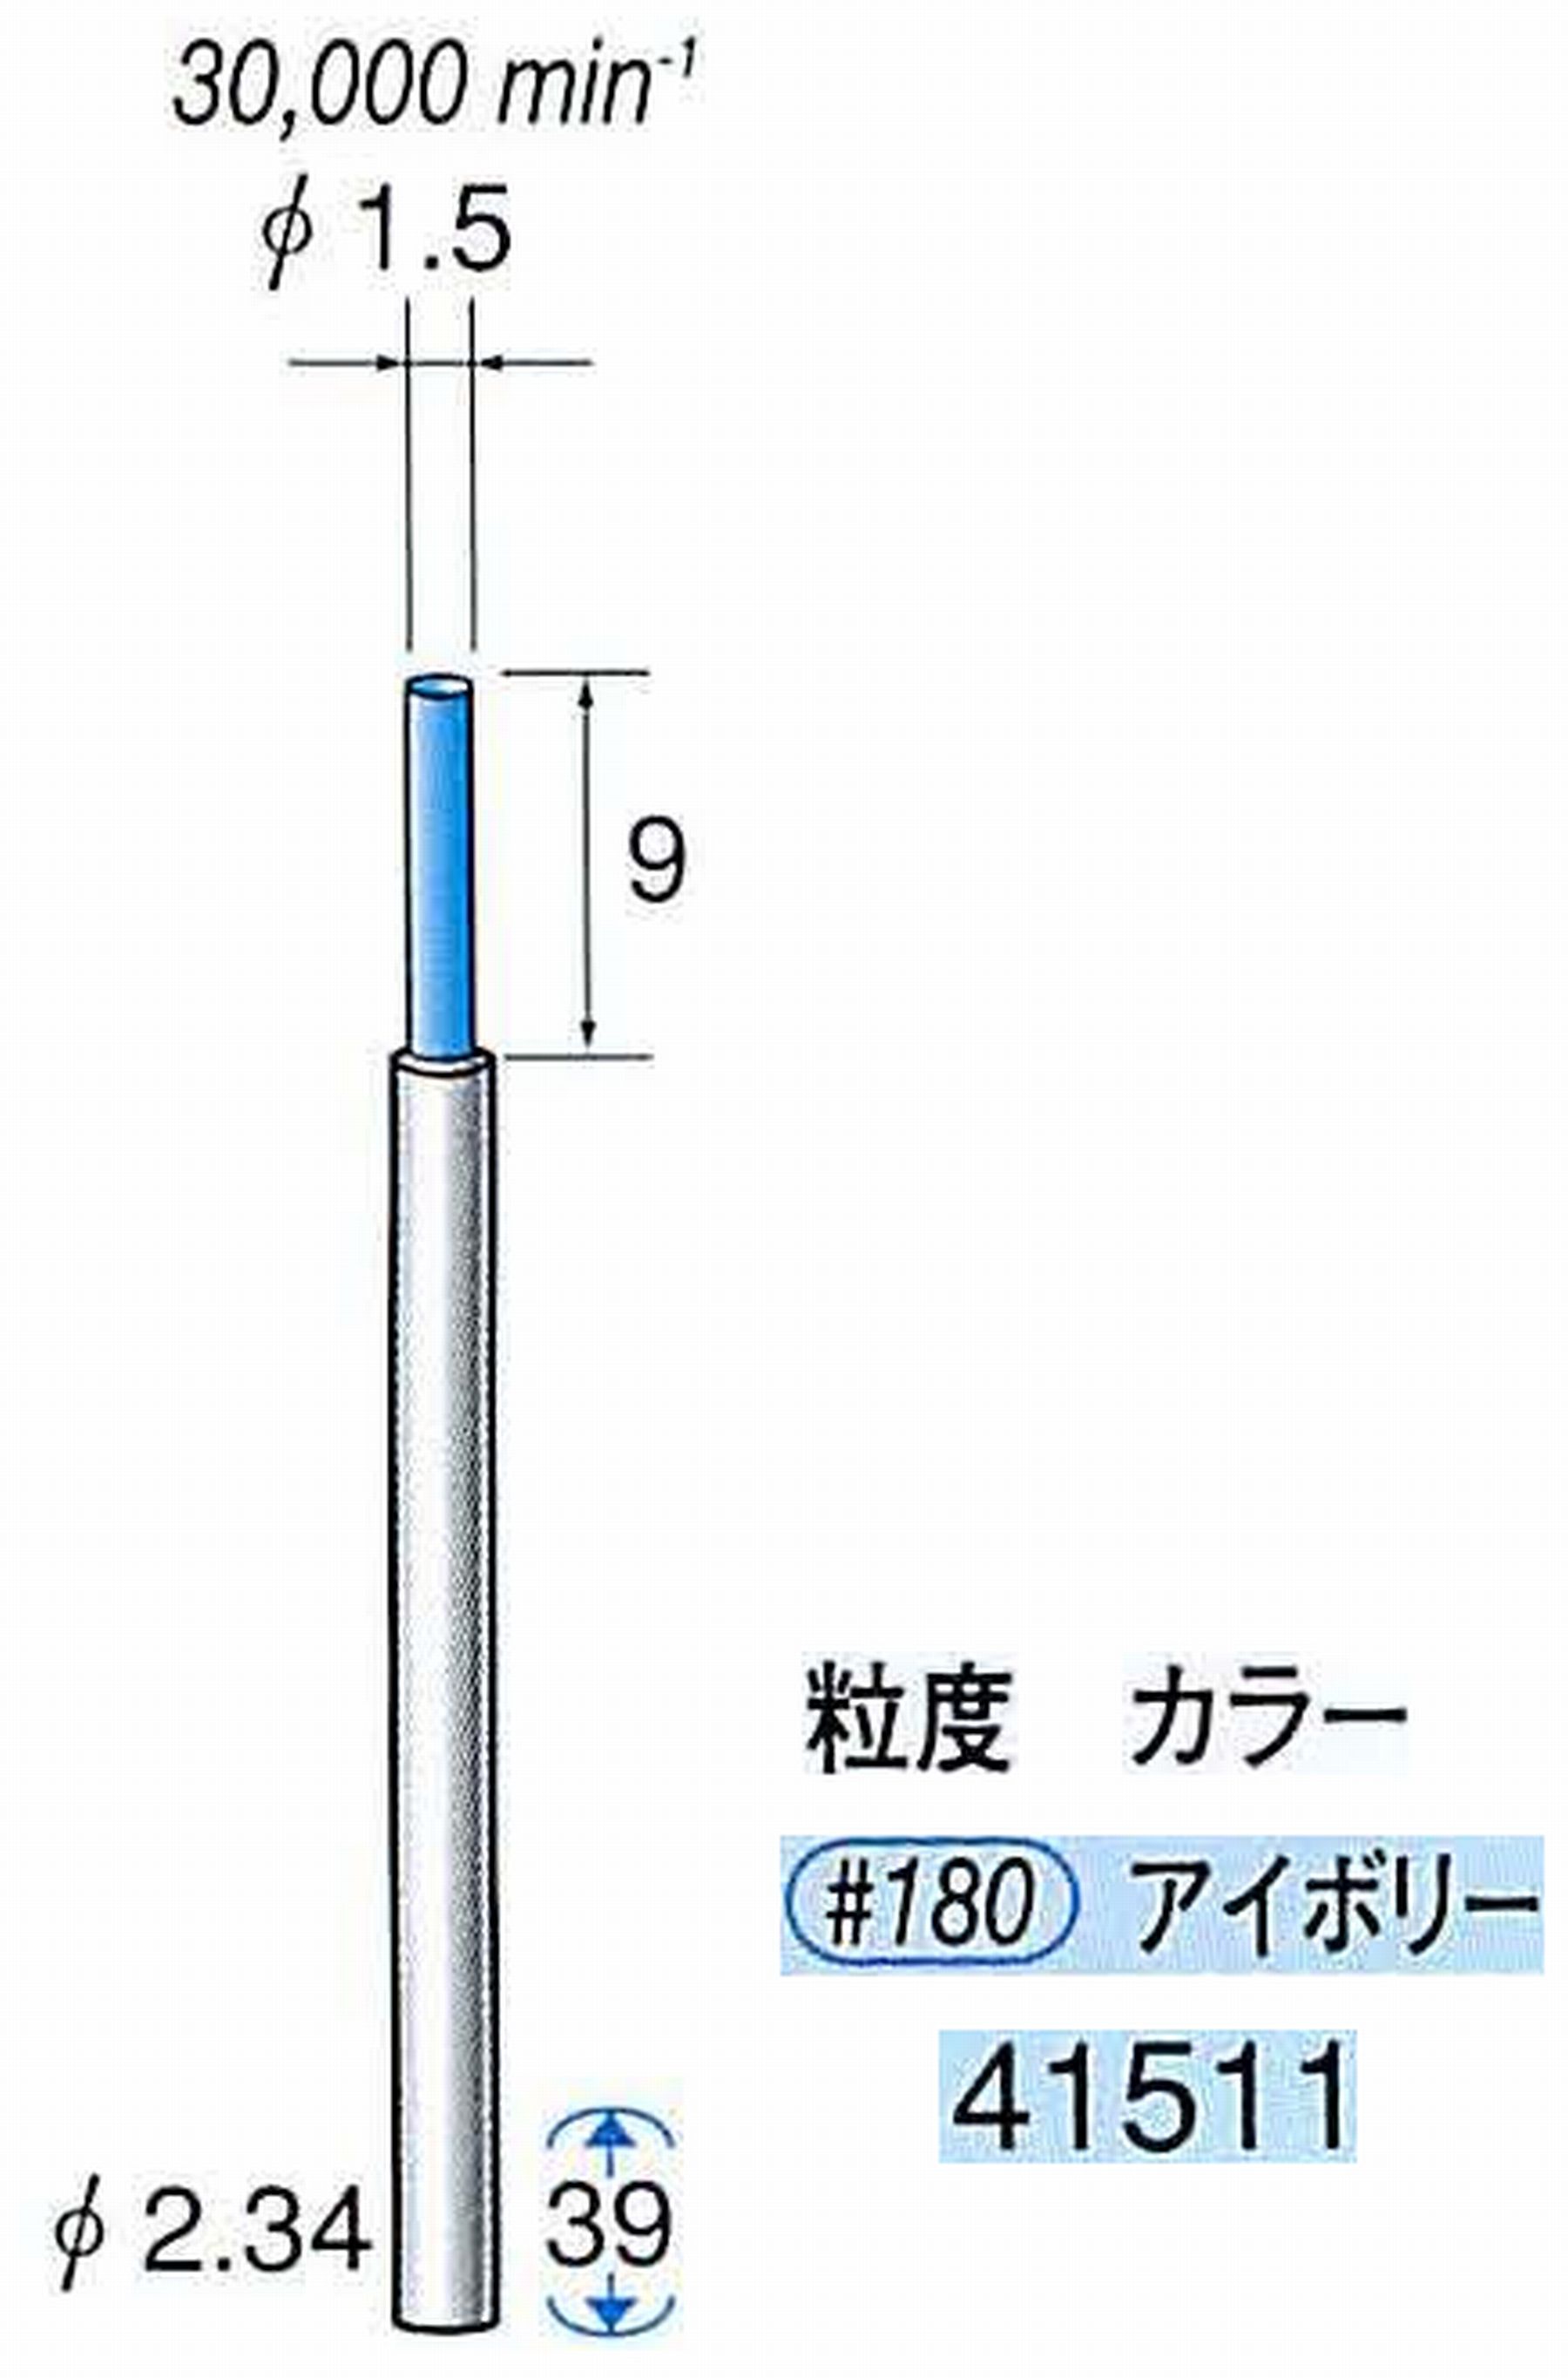 ナカニシ/NAKANISHI セラファイバー精密軸付砥石(カラー アイボリー) 軸径(シャンク) φ2.34mm 41511